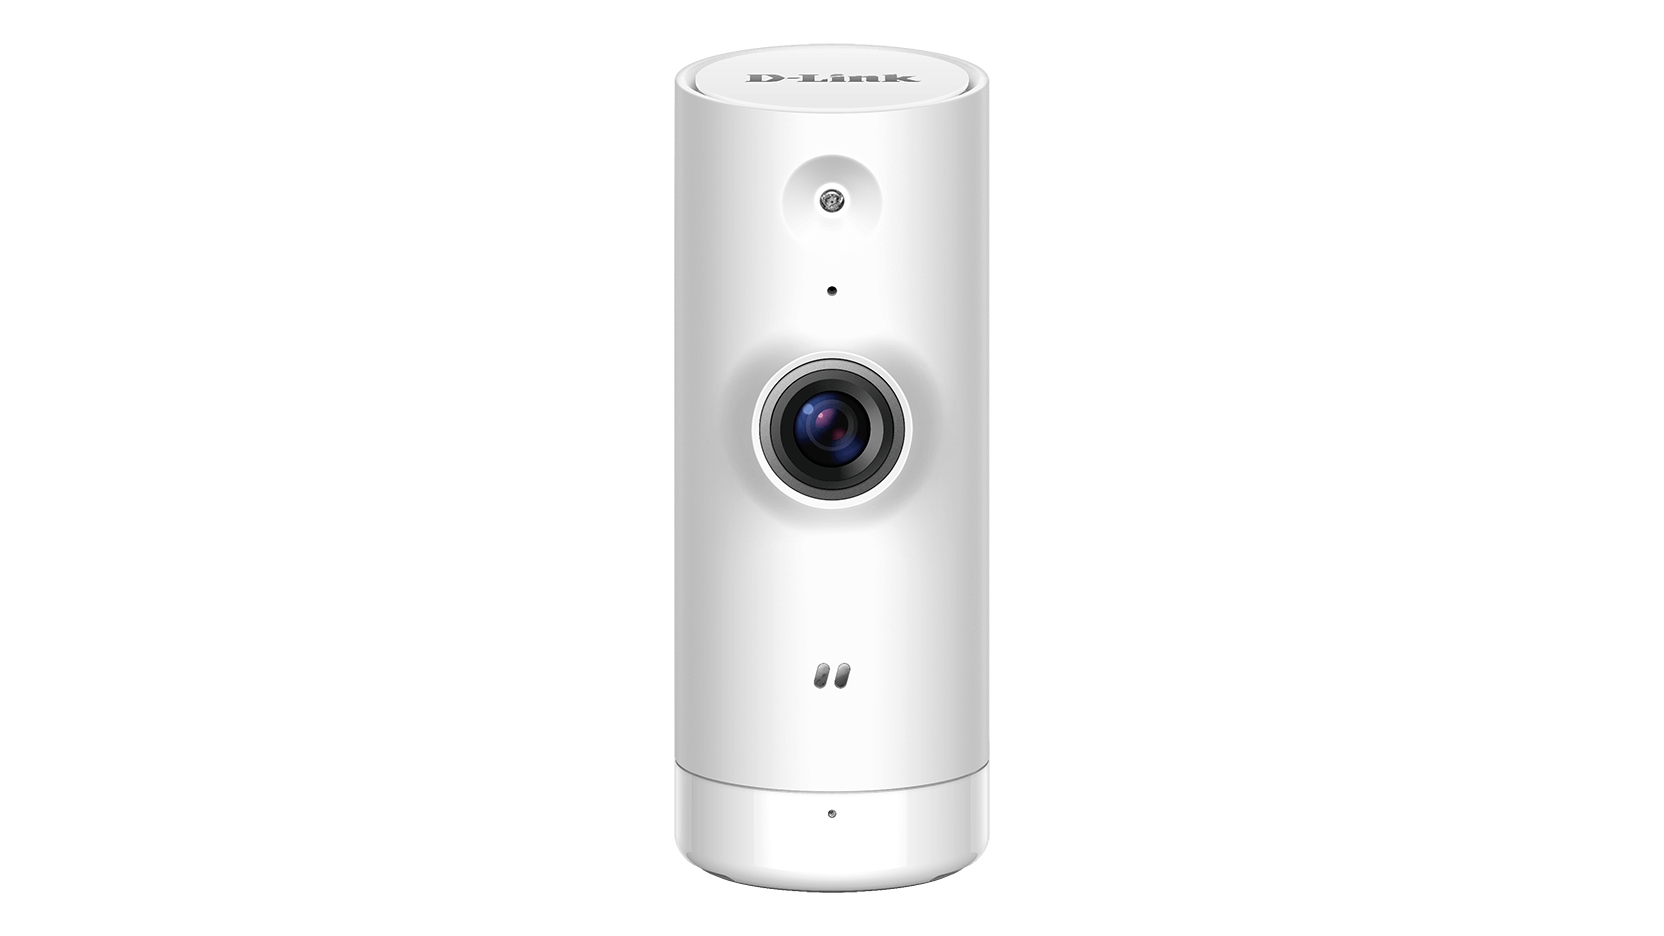 D-Link Camara de Vigilancia WiFi N Mini - HD 720p - Vision Nocturna - Angulo de Vision 120° - Deteccion de Movimiento - Para Interior - Color Blanco